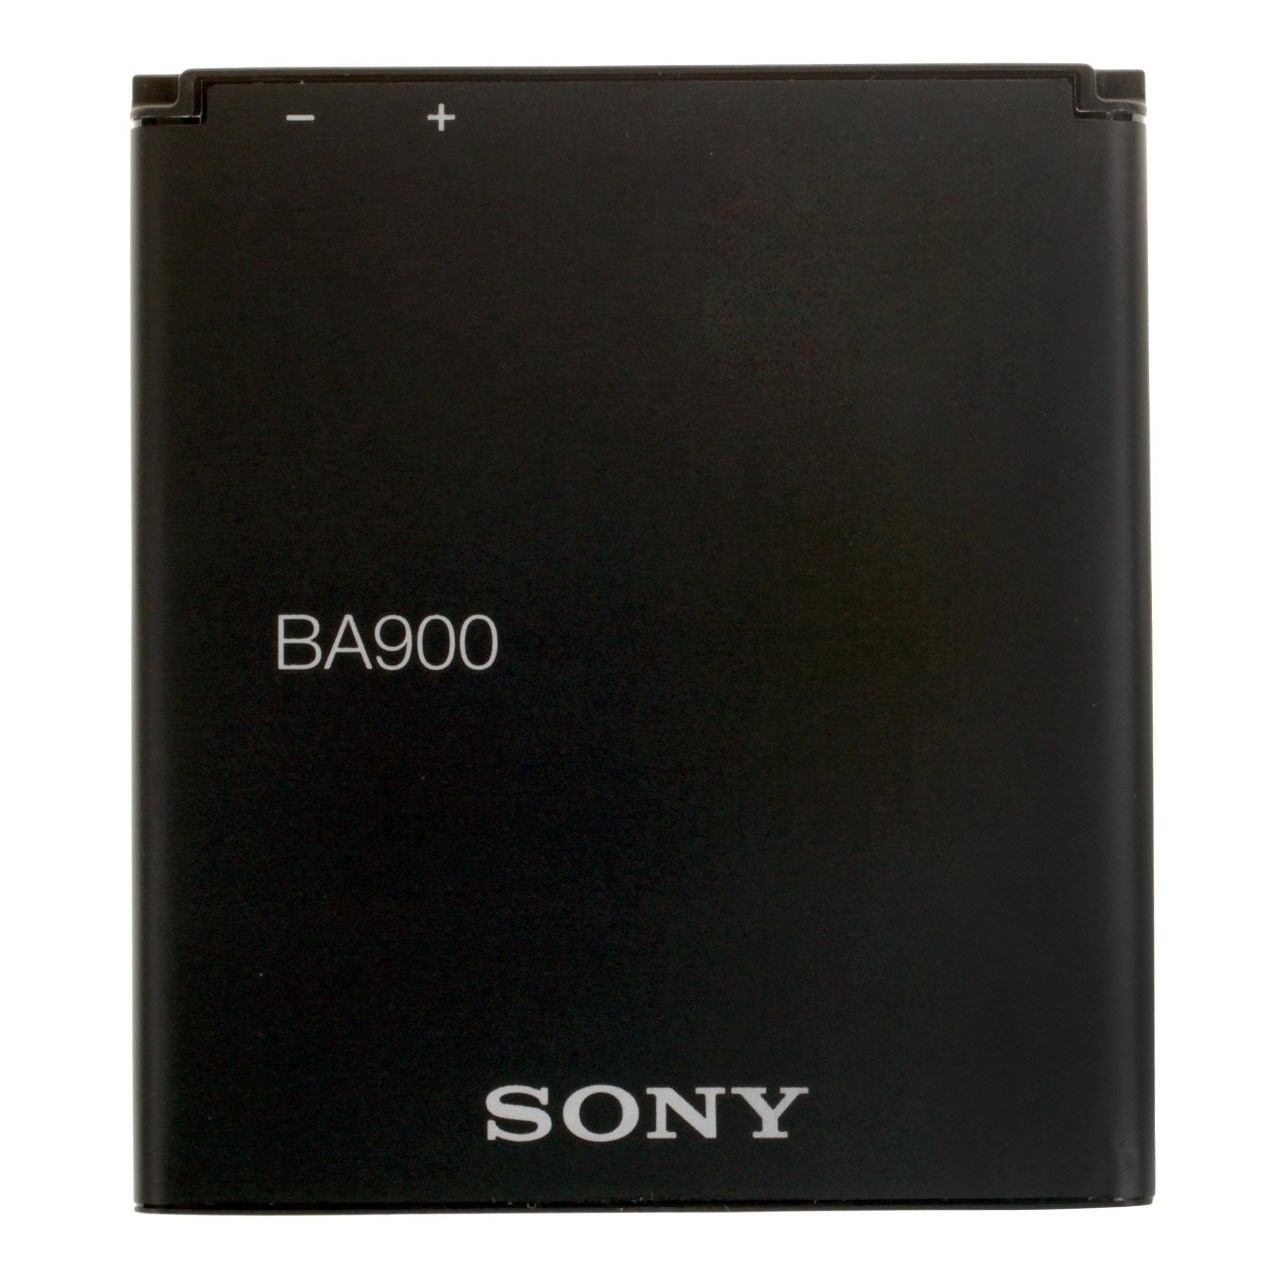 باتری موبایل  مناسب برای سونی BA900 با ظرفیت 1700mAh